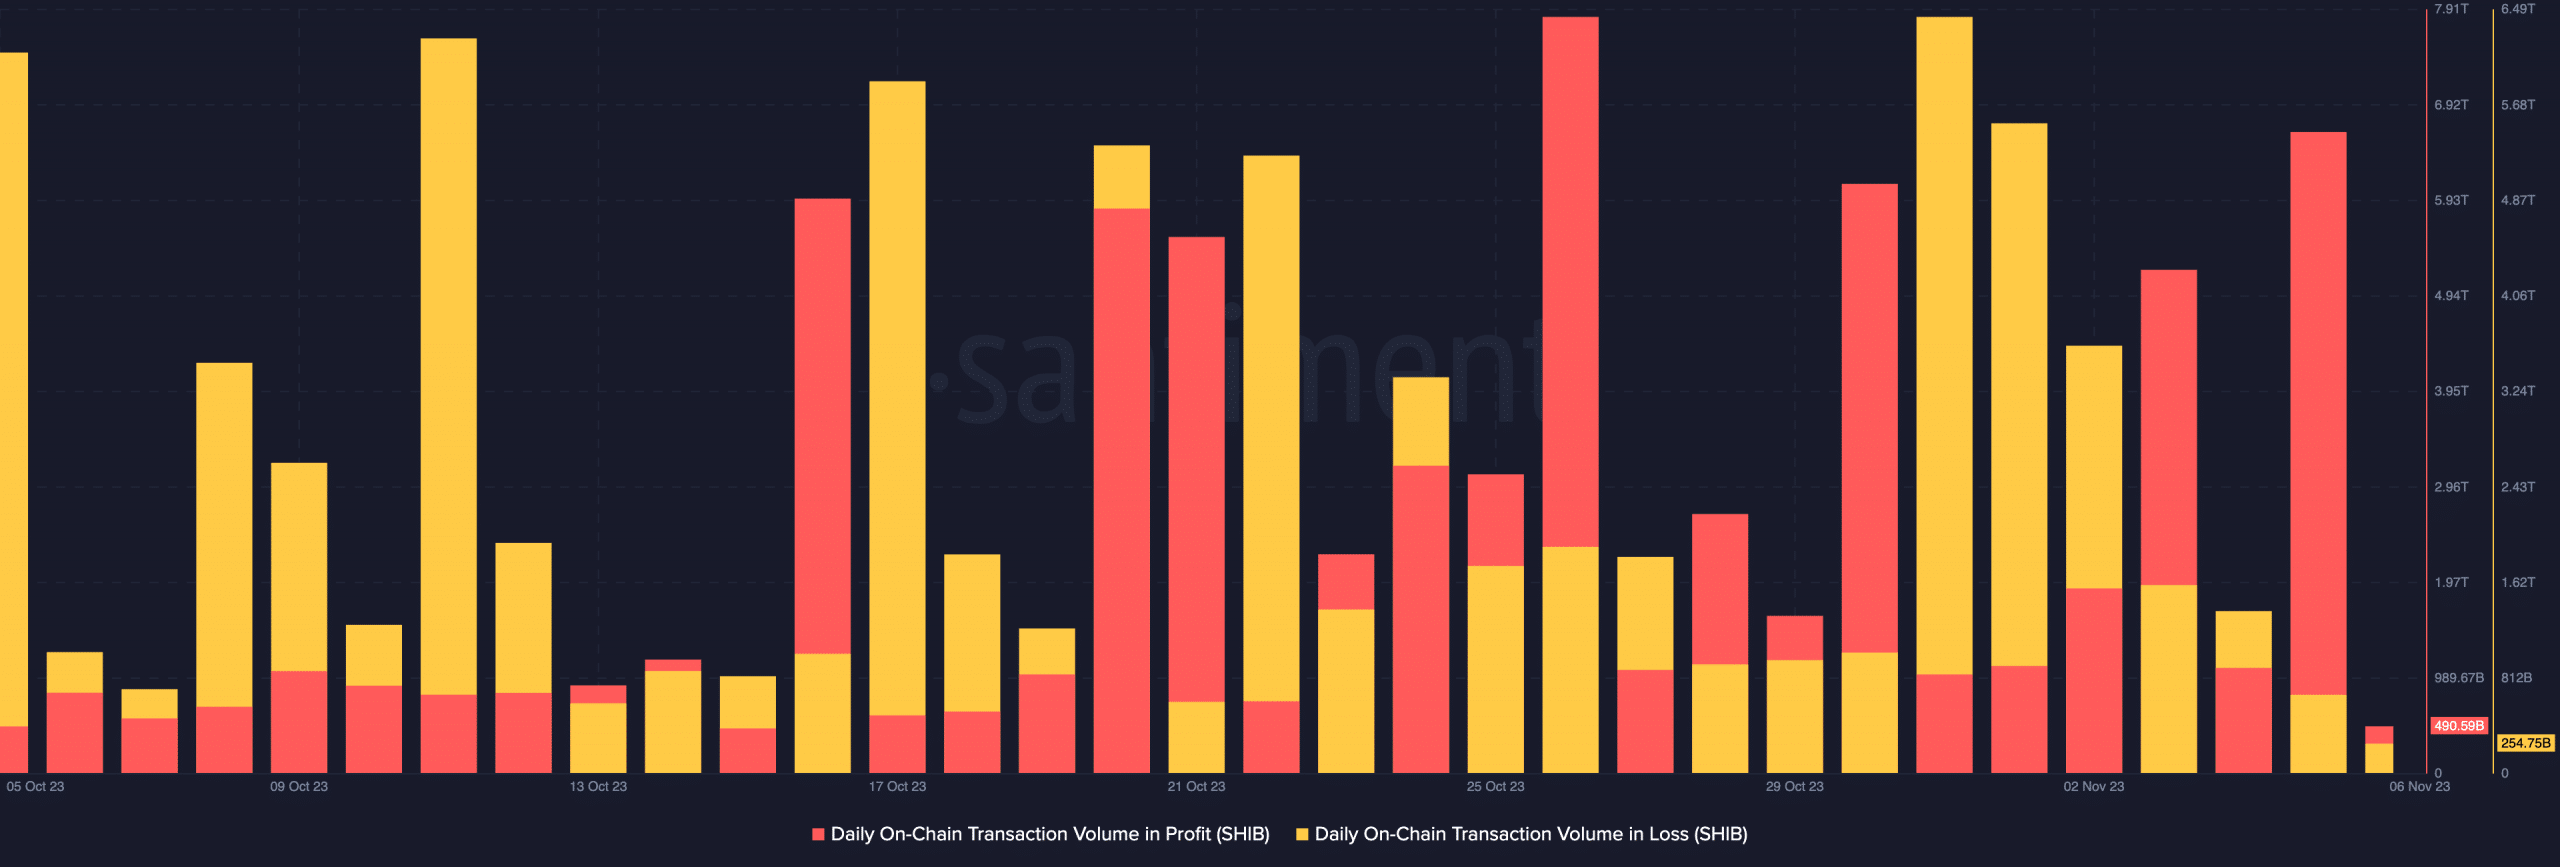 Volumen de transacciones en cadena de Shiba inu en pérdidas y ganancias